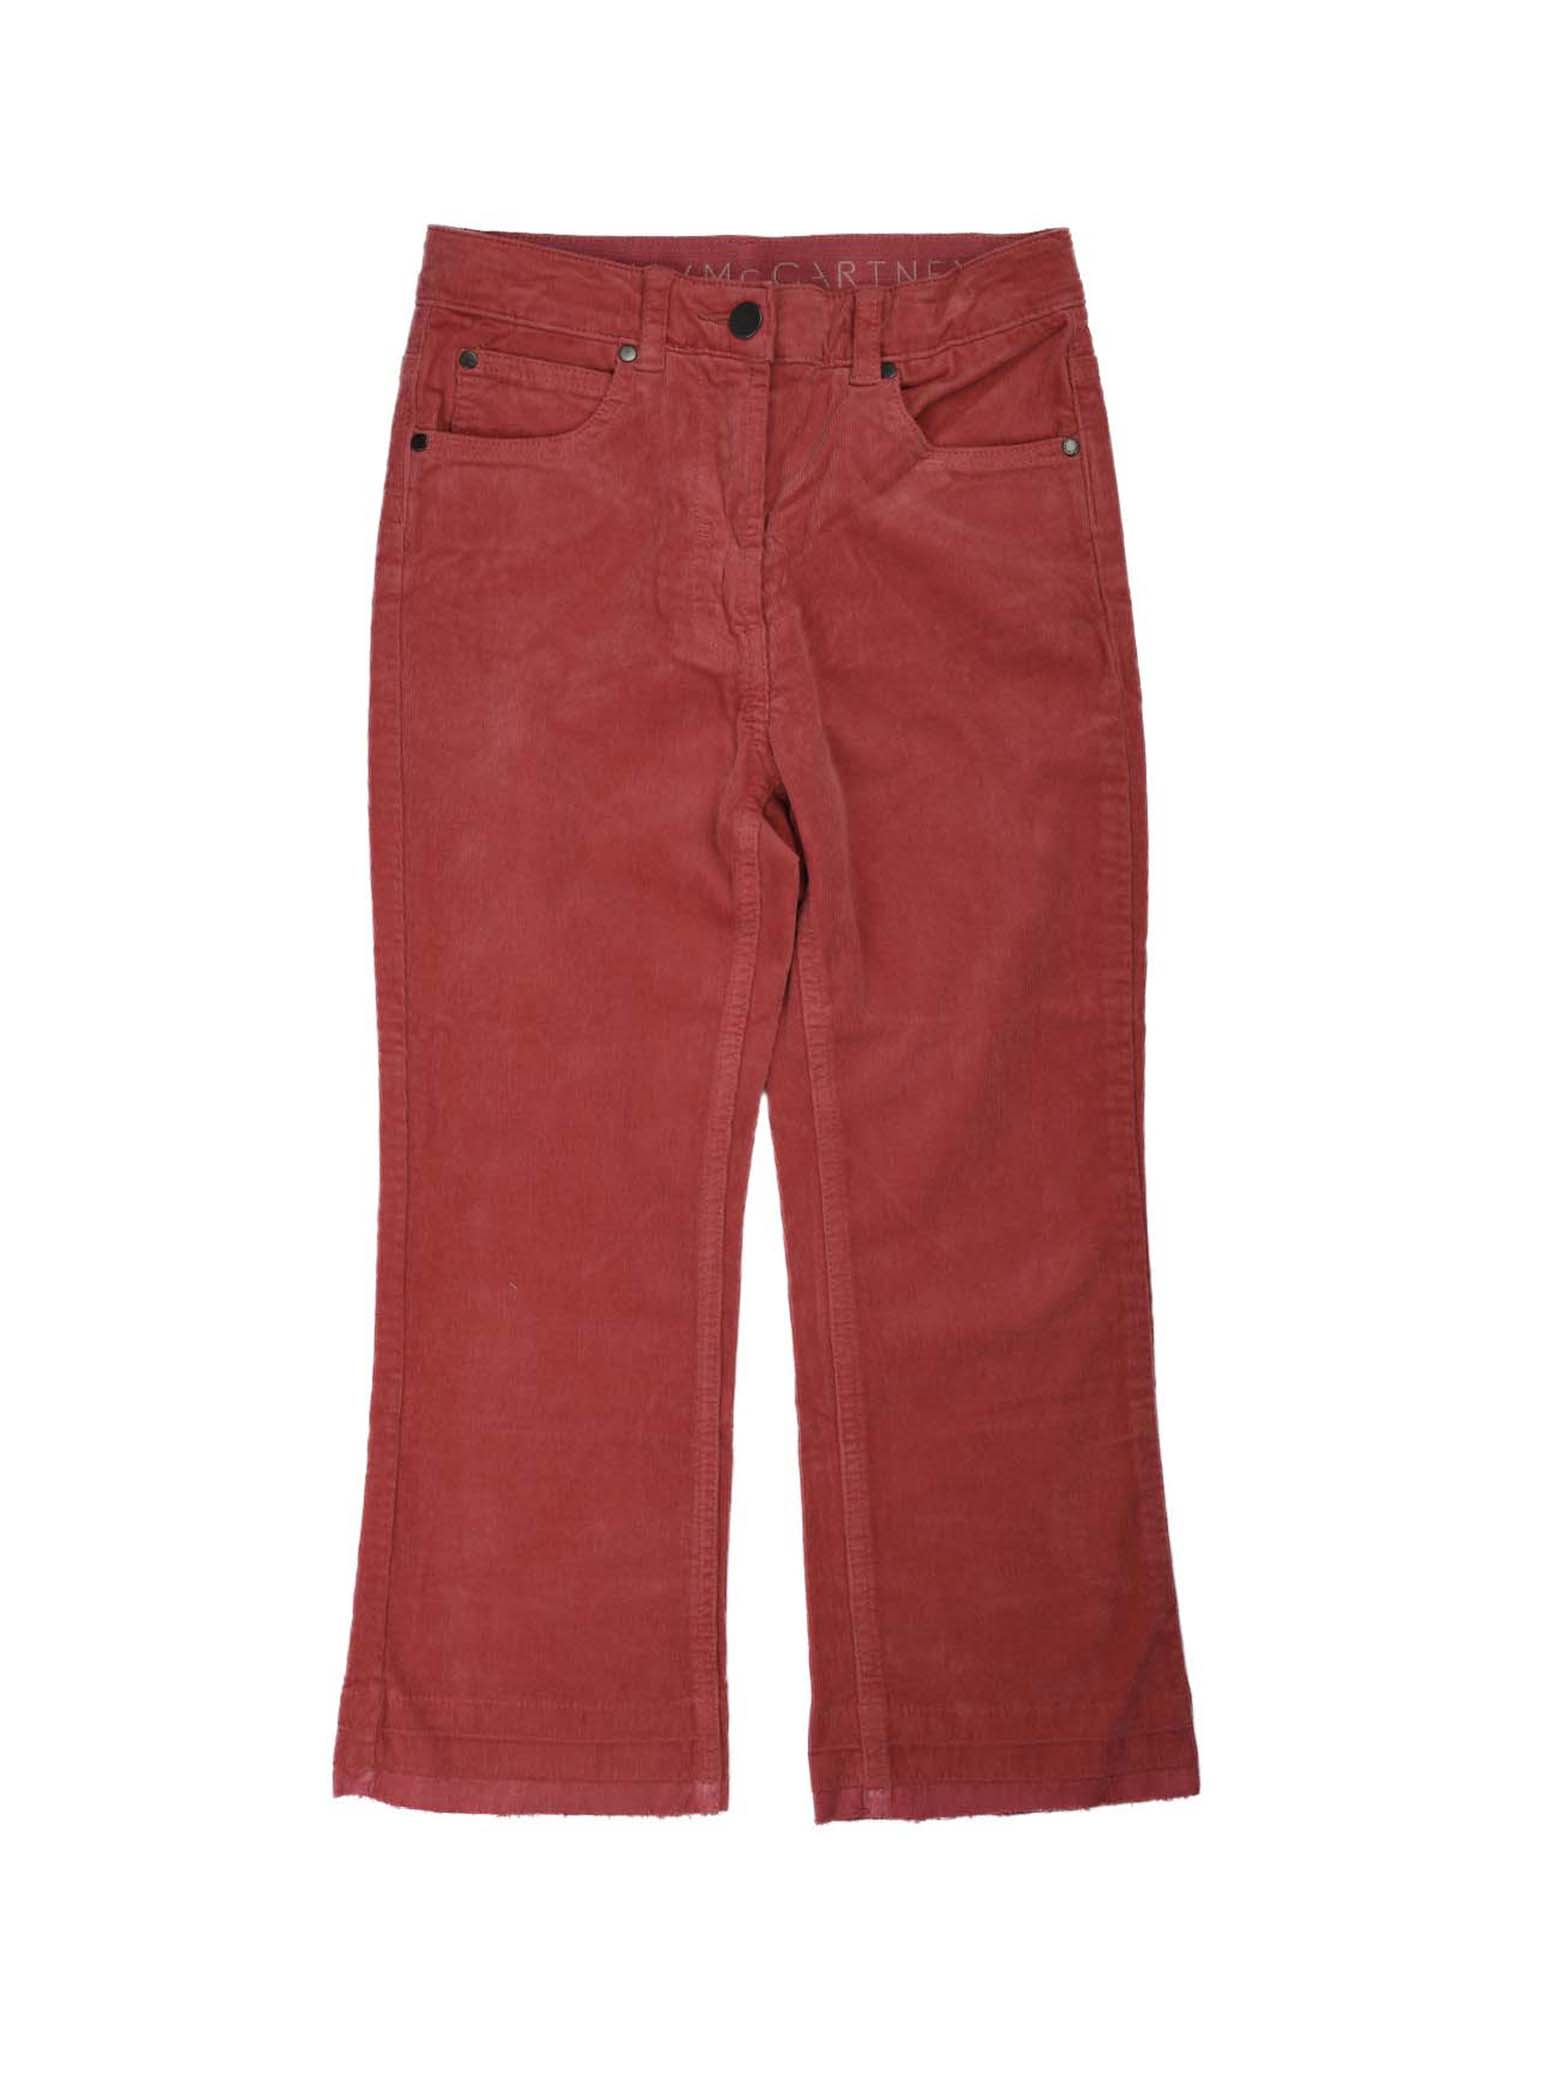 Stella McCartney Kids strawberry velvet trousers